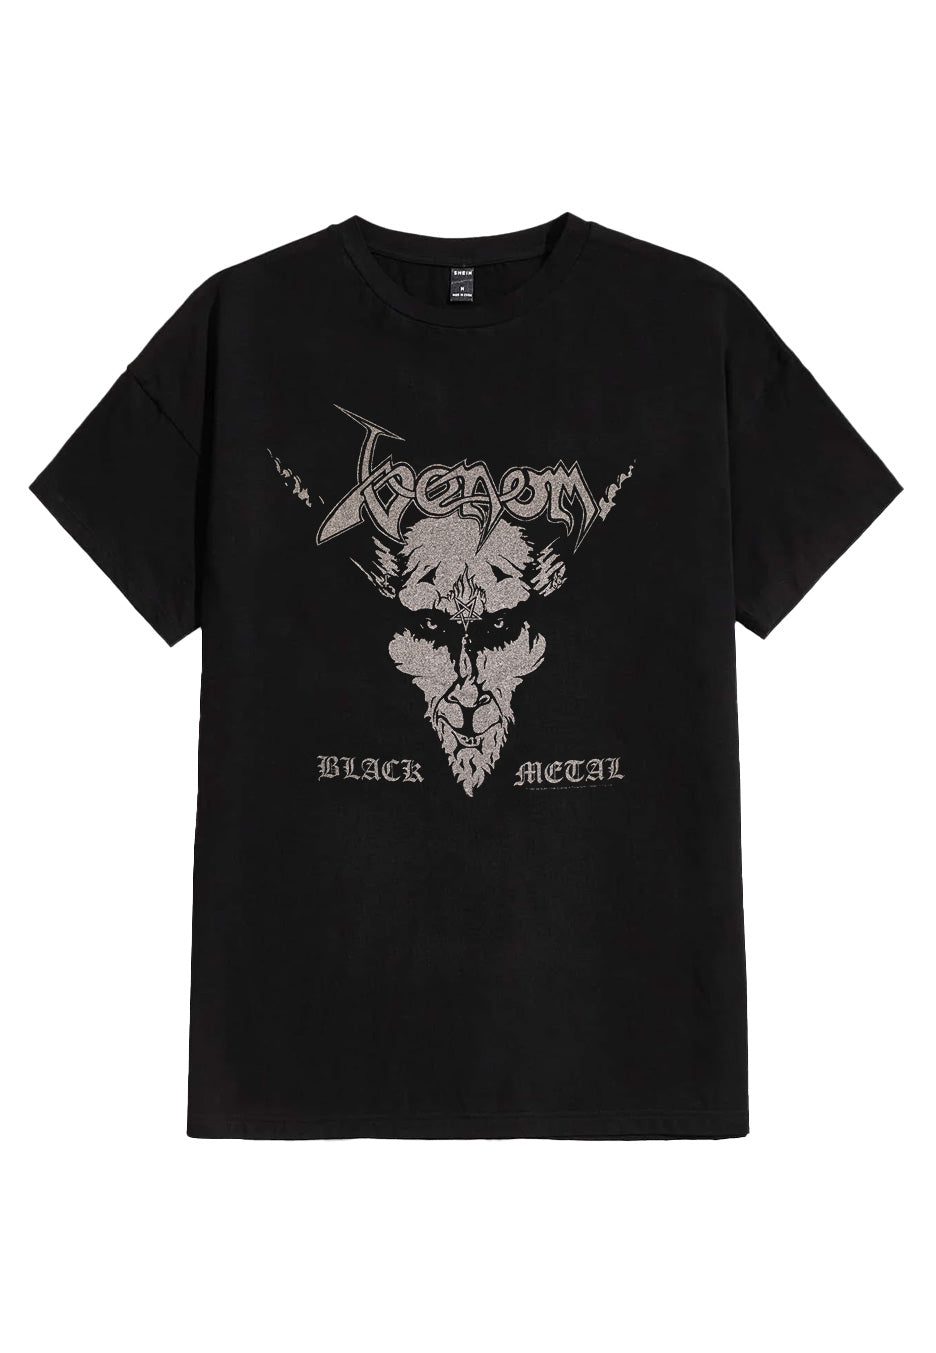 Venom - Black Metal - T-Shirt